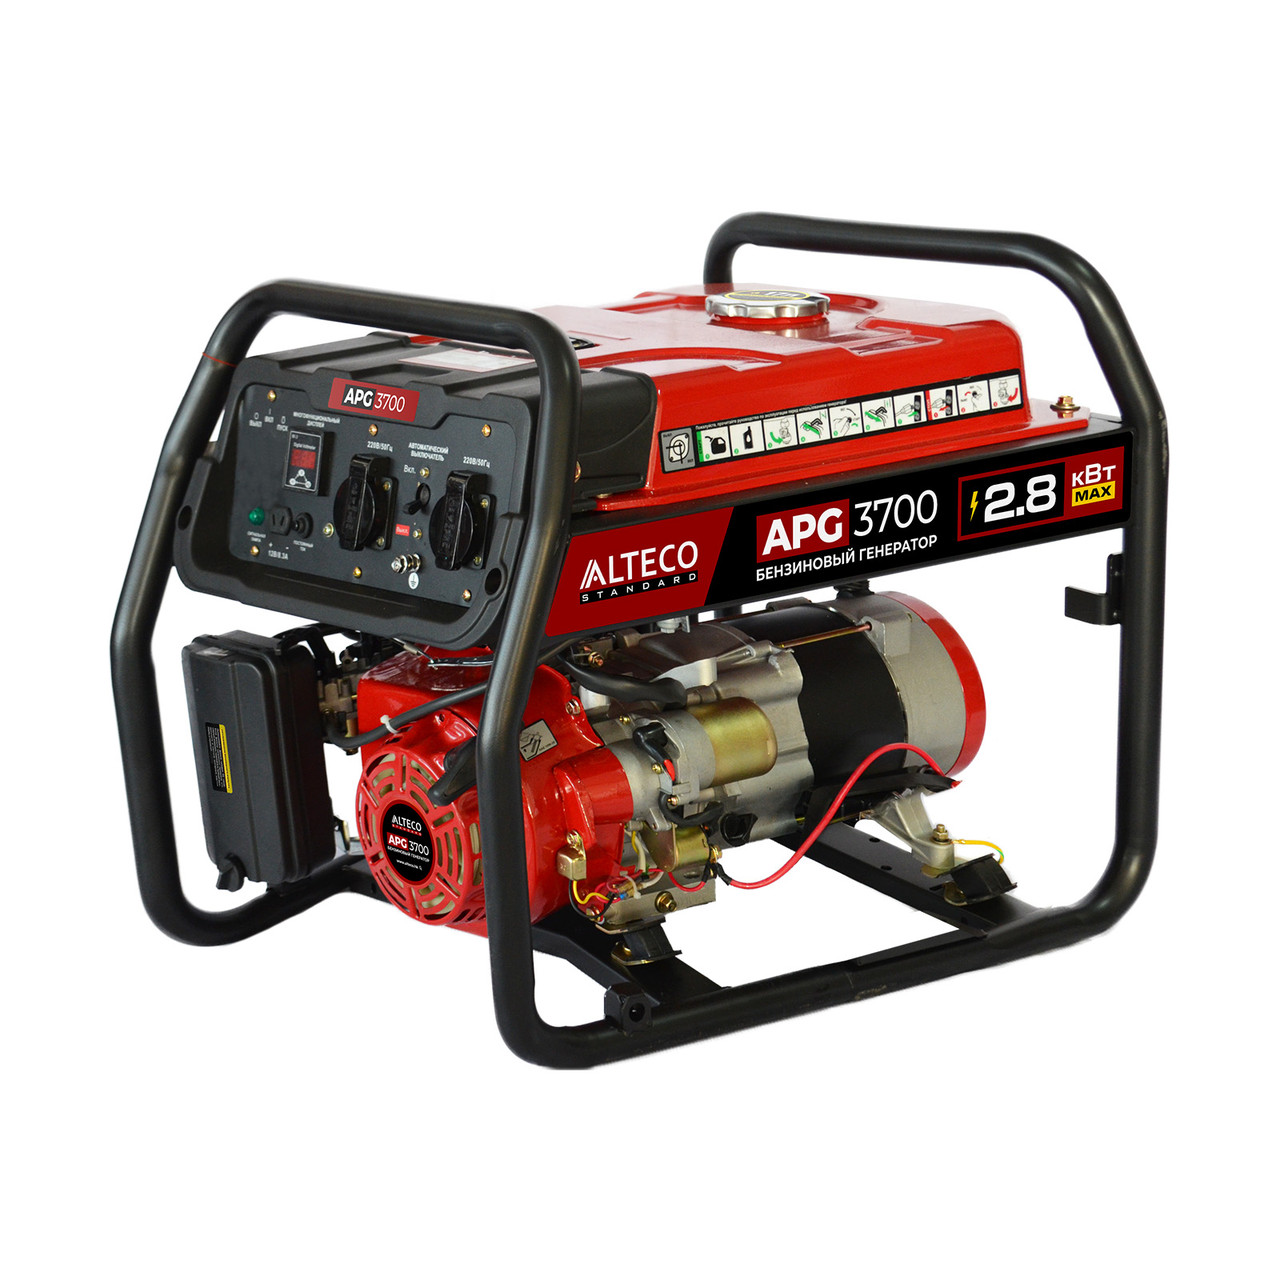 Бензиновый генератор ALTECO APG 3700 (N) 26612 (2.8 кВт, 220 В, ручной старт, бак 15 л)